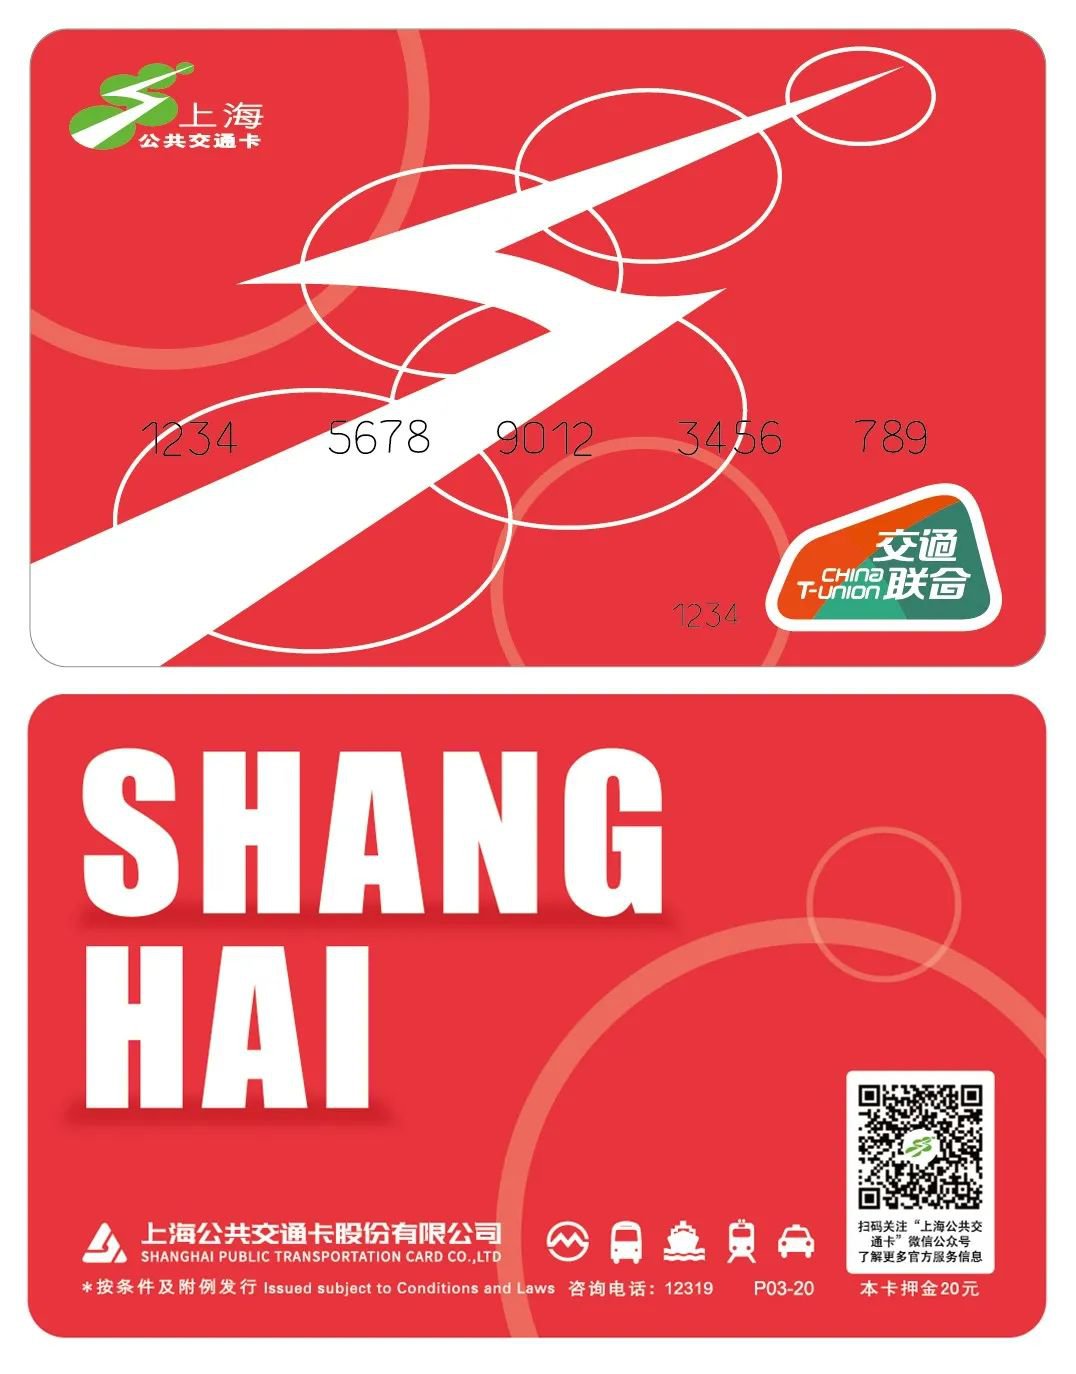 新上海交通卡销售点 (地址 营业时间)